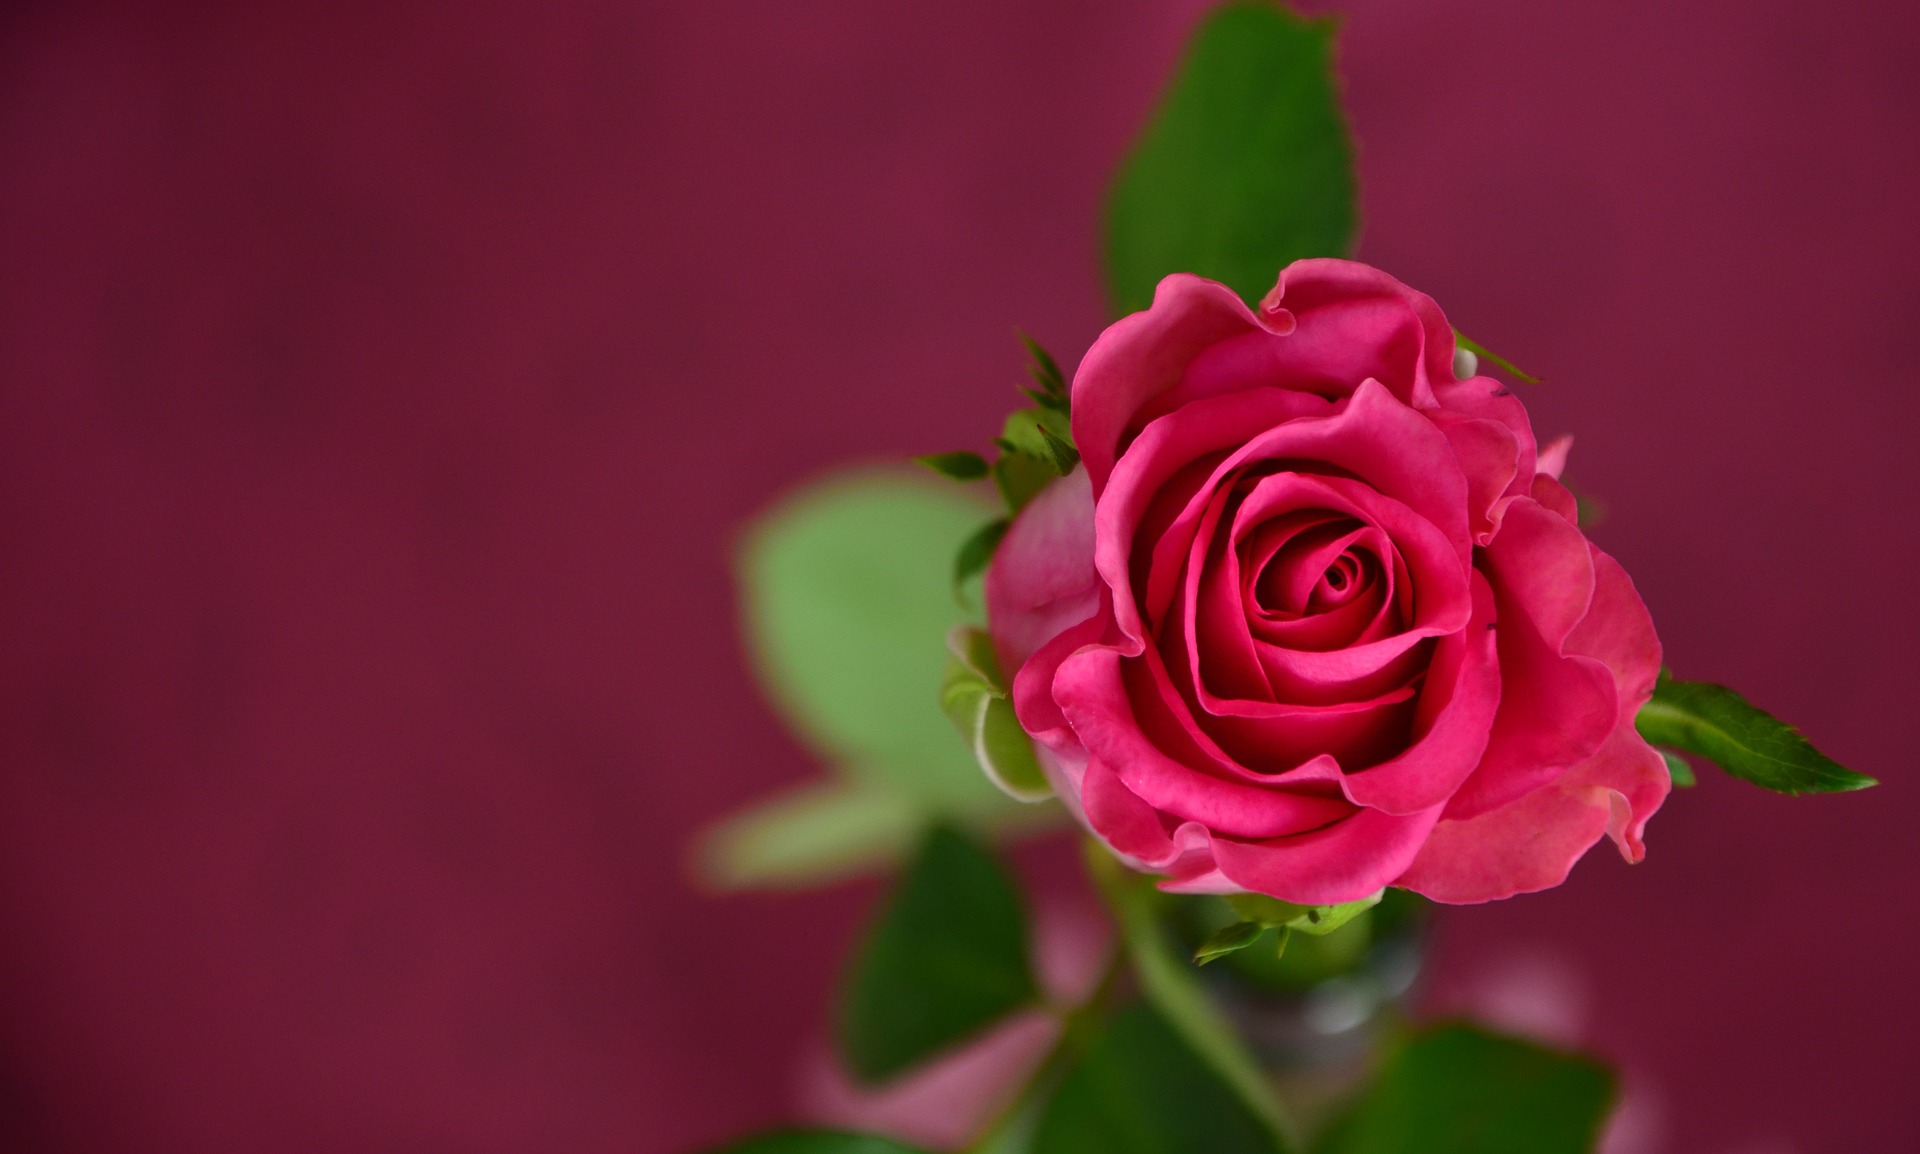 Valkeakosken ammattiopisto, VAAO. Kuvassa on yksi vaaleanpunainen ruusu. Tausta on rubiininpunainen.